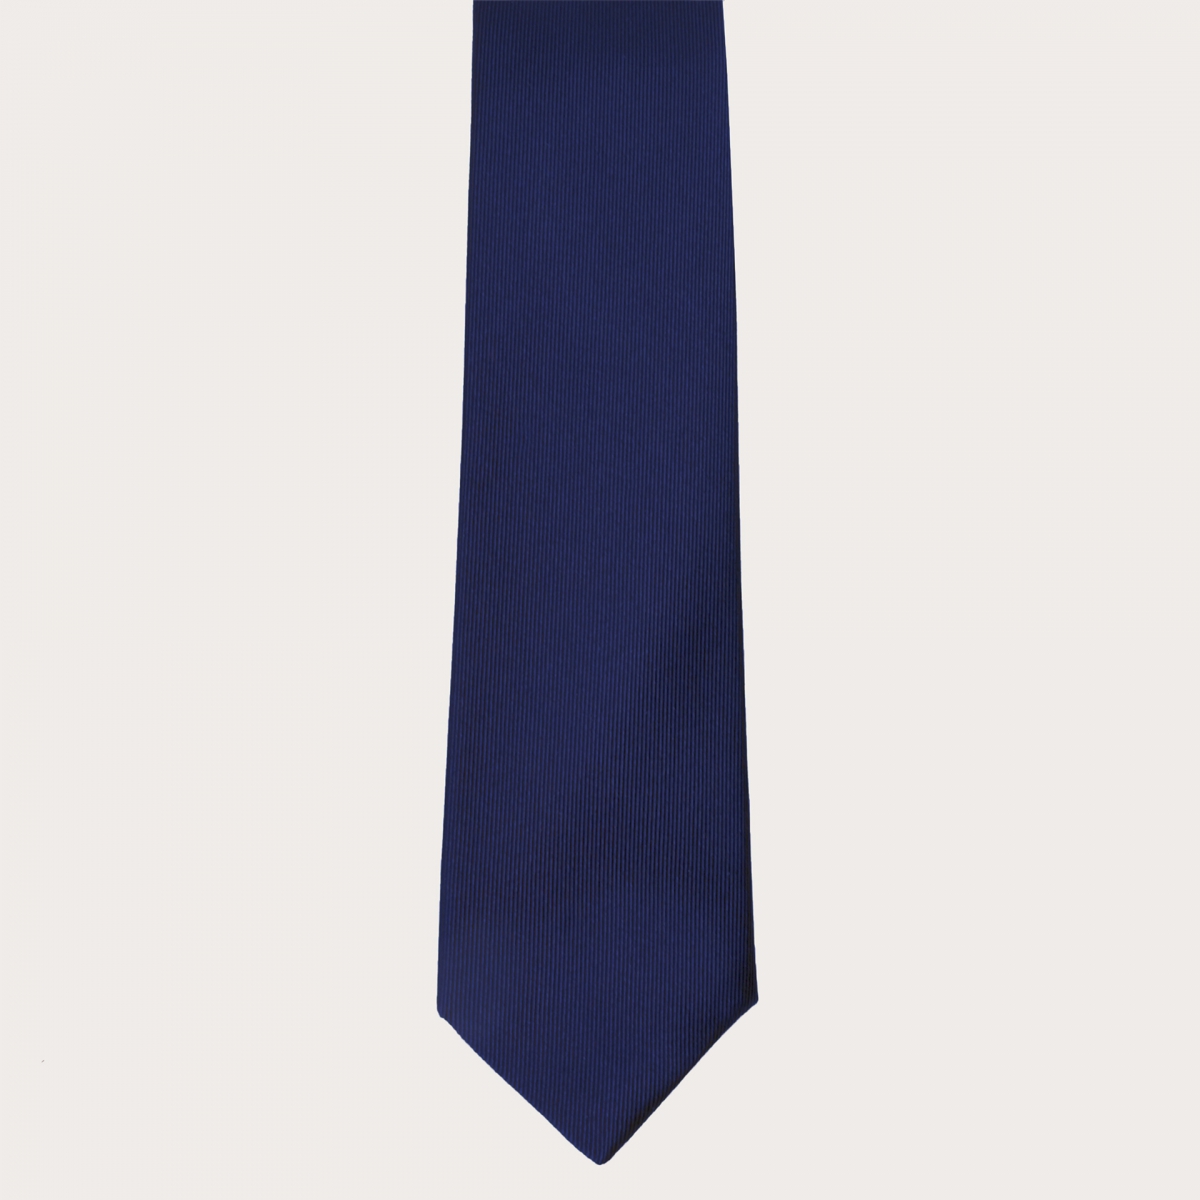 BRUCLE Bretelles et cravate assorties en soie jacquard, bleu